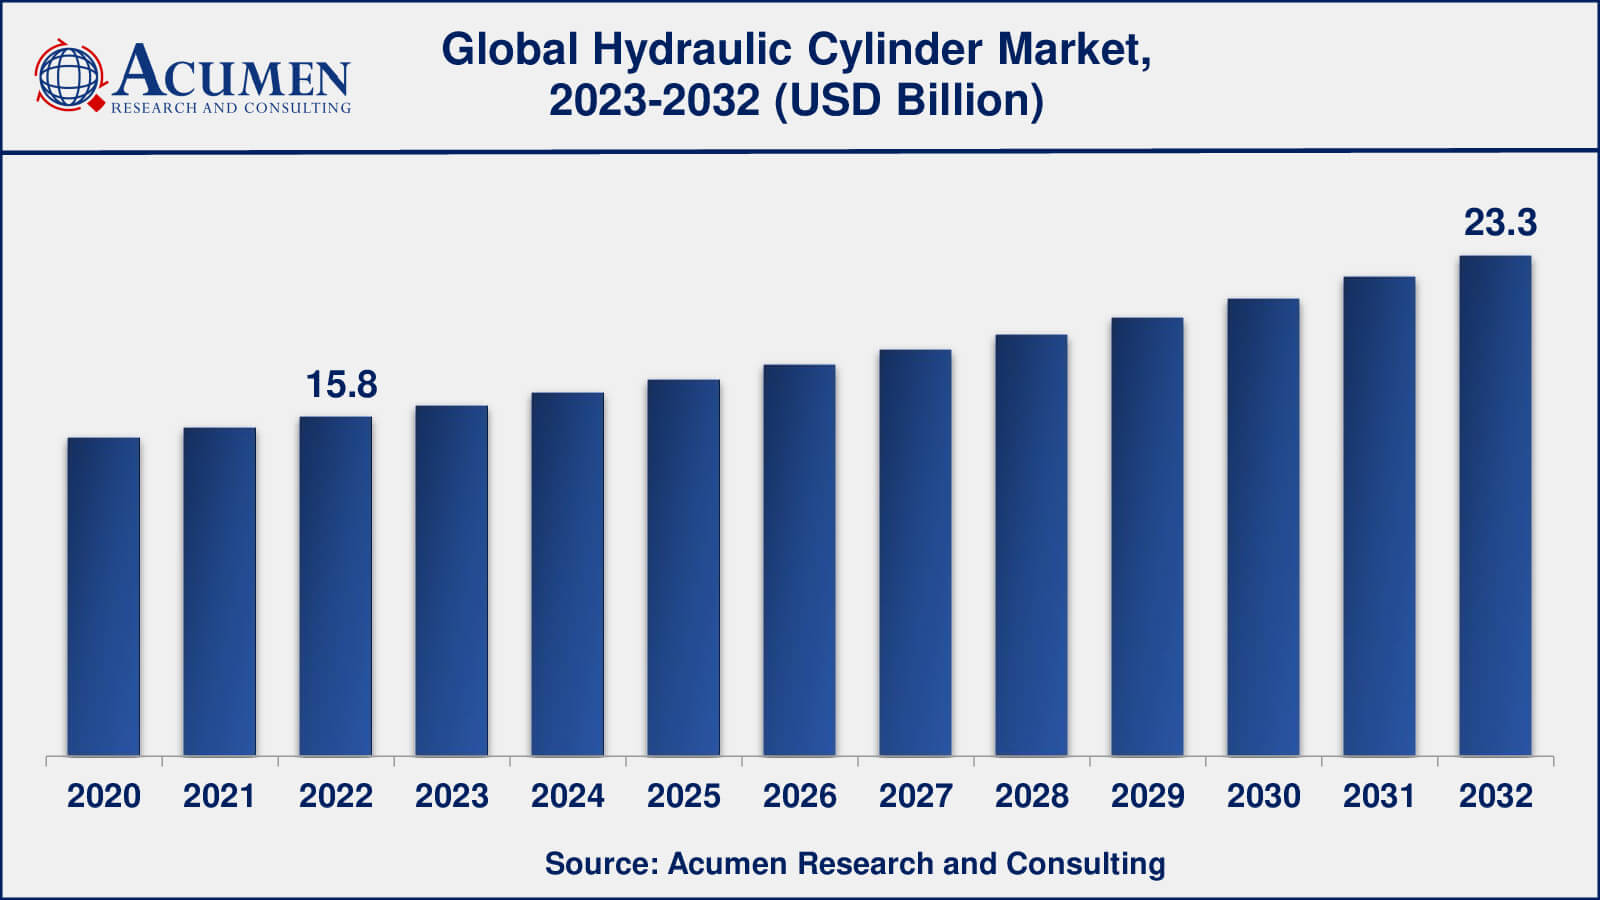 Global Hydraulic Cylinder Market Dynamics